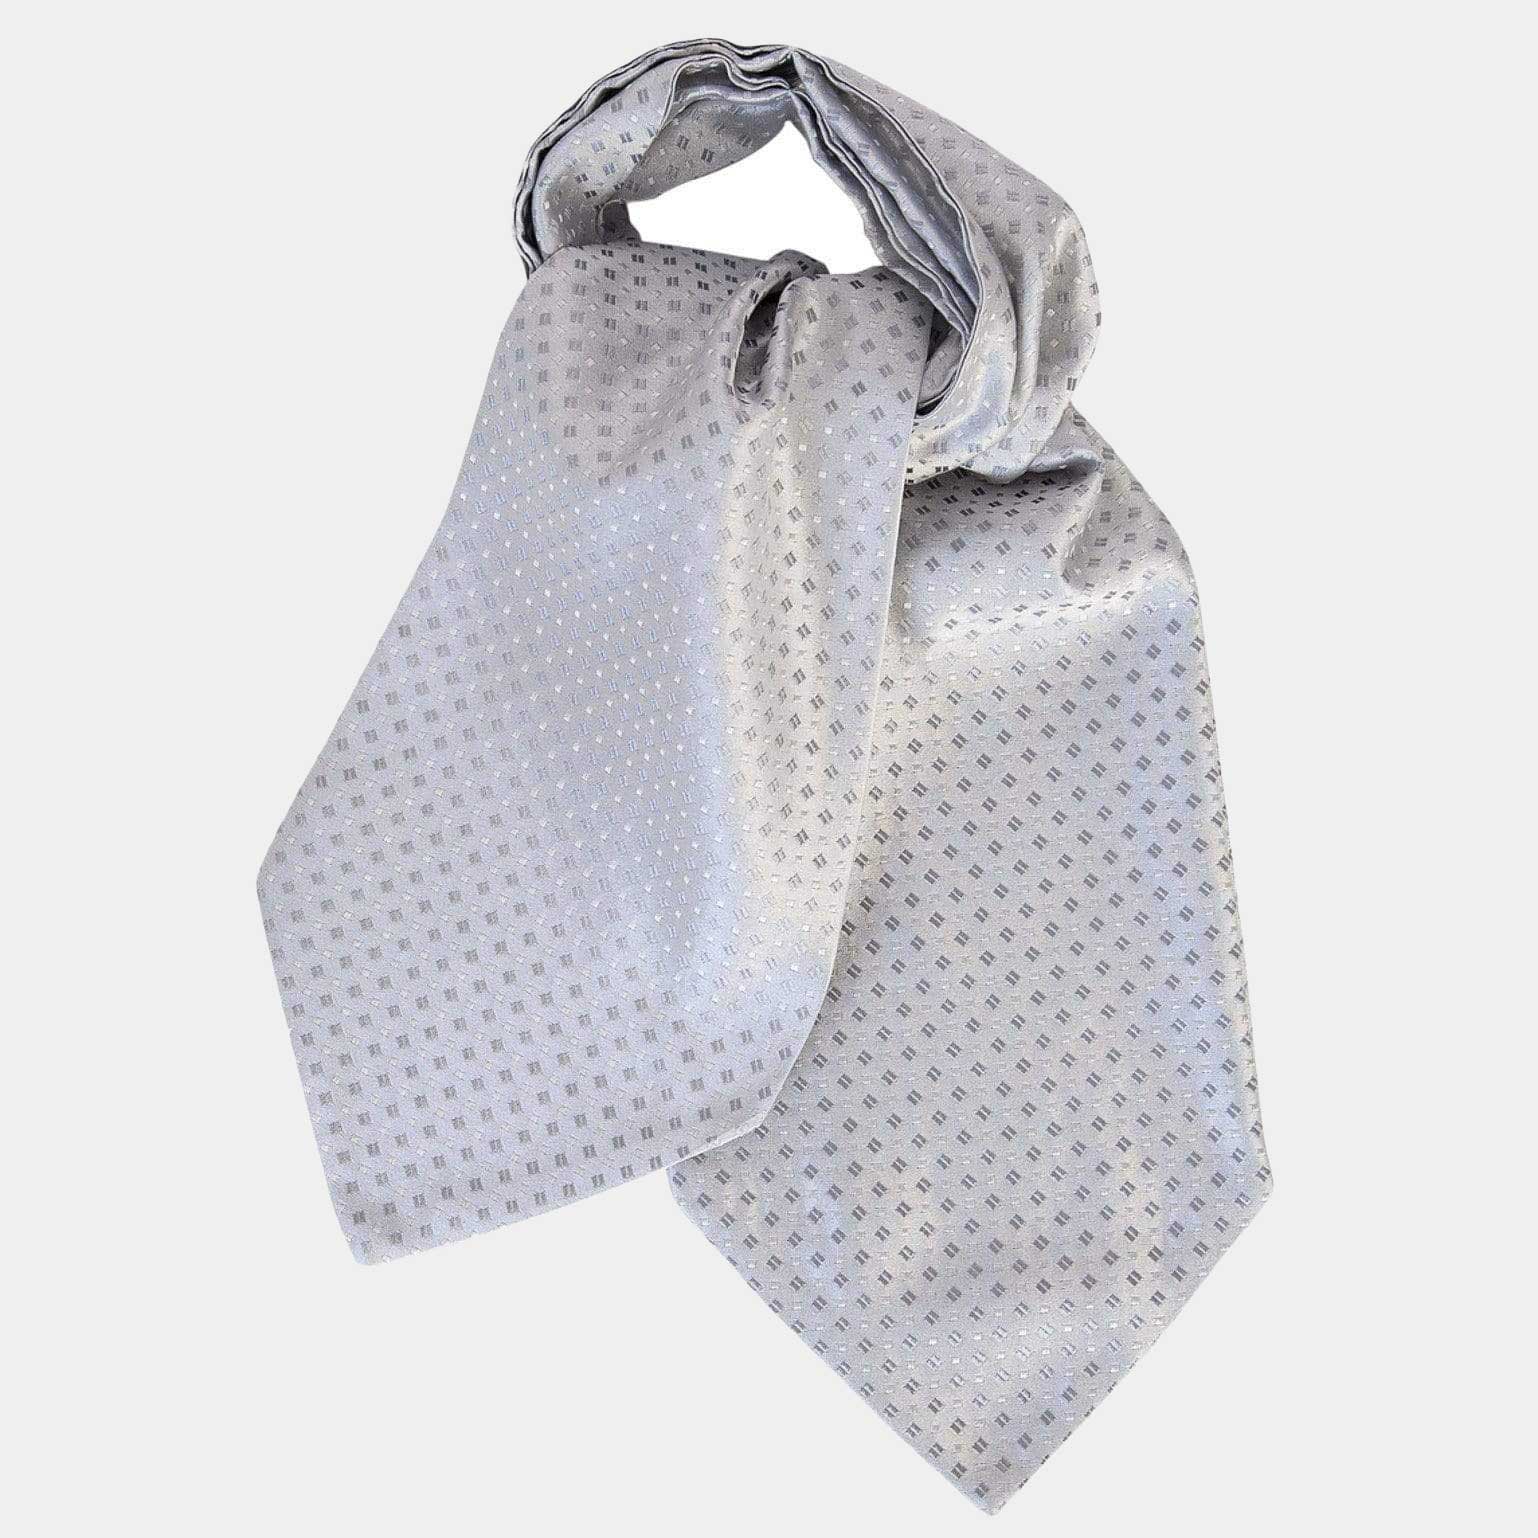 Ascot Ties & Cravats for Men - Silk Made in Italy - Elizabetta